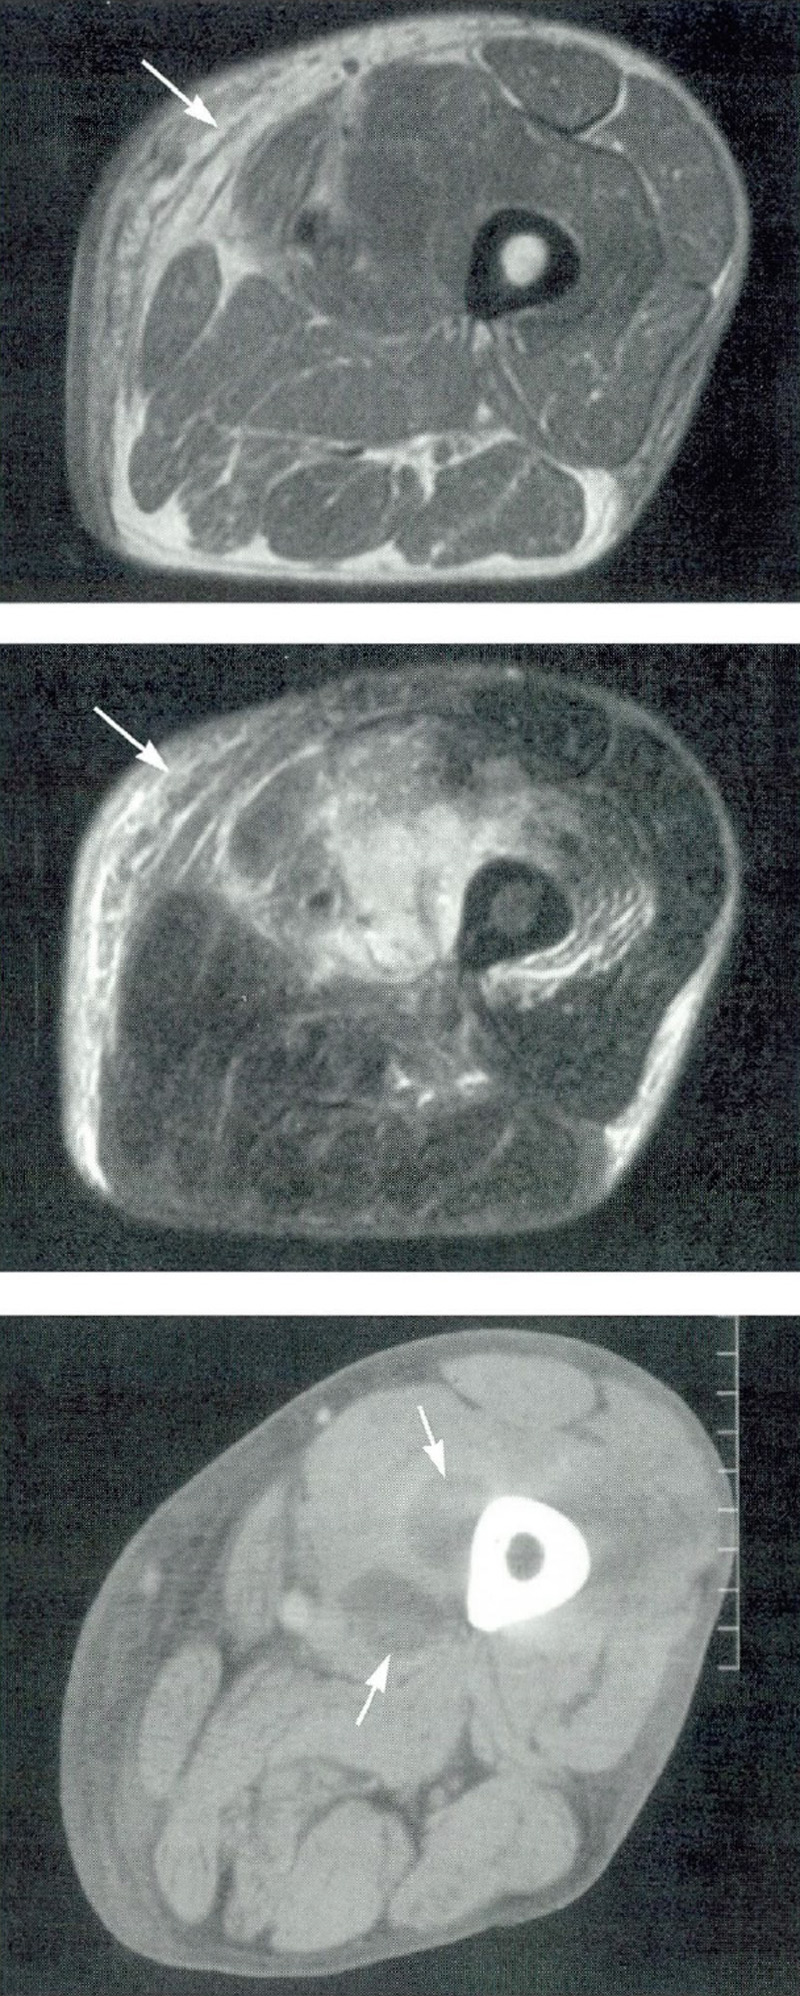 MRI-pildid (kaks ülemist pilti) näitavad põletikku reiekoes.  CT-skaneerimine (alumine pilt) näitab abstsessi (püomüosiiti), mis tekkis reieluu (reieluu) lähedal.